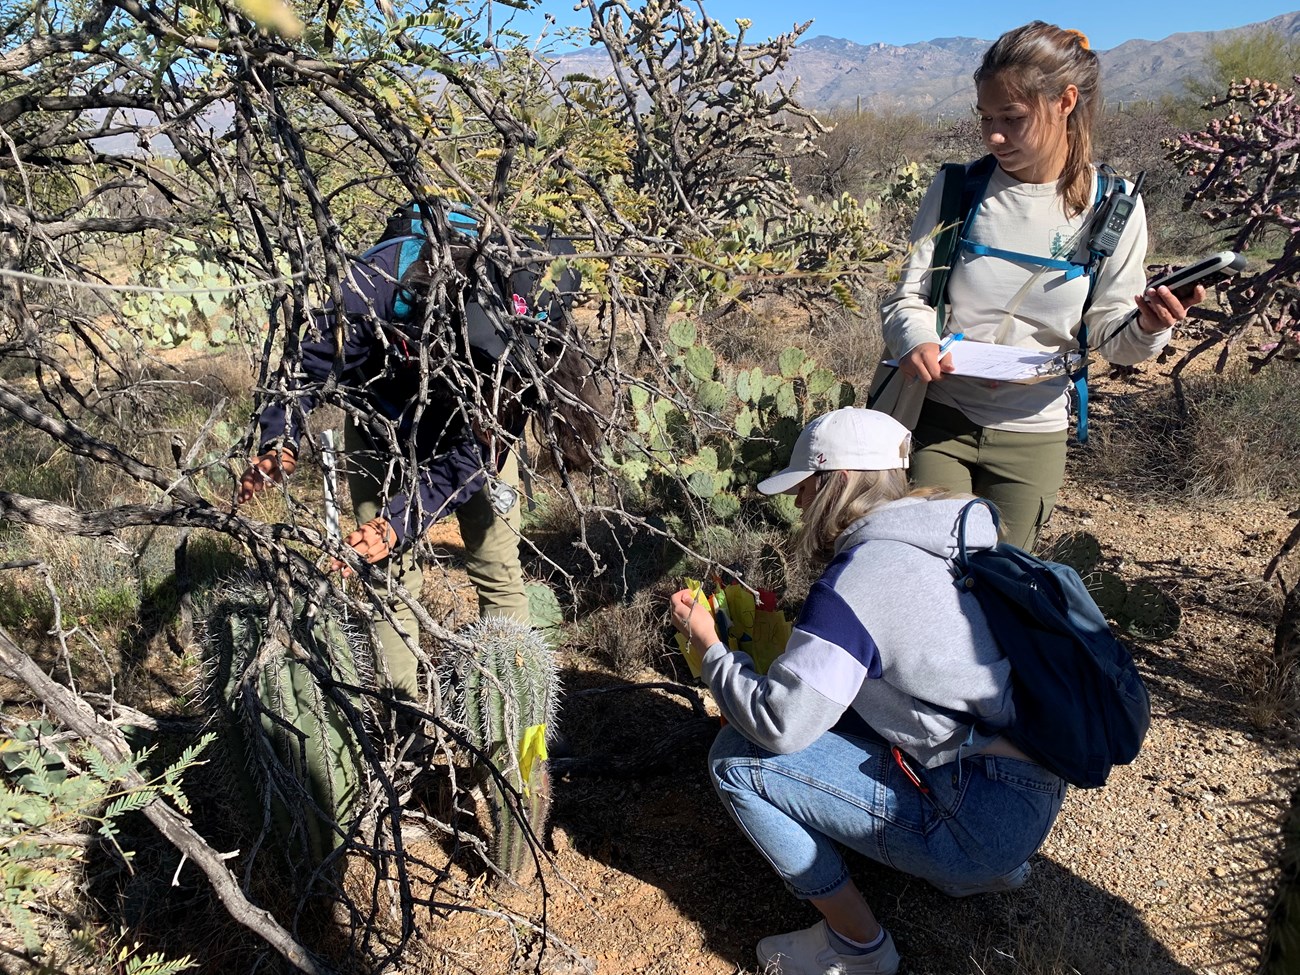 Students measure small saguaros under nurse tree